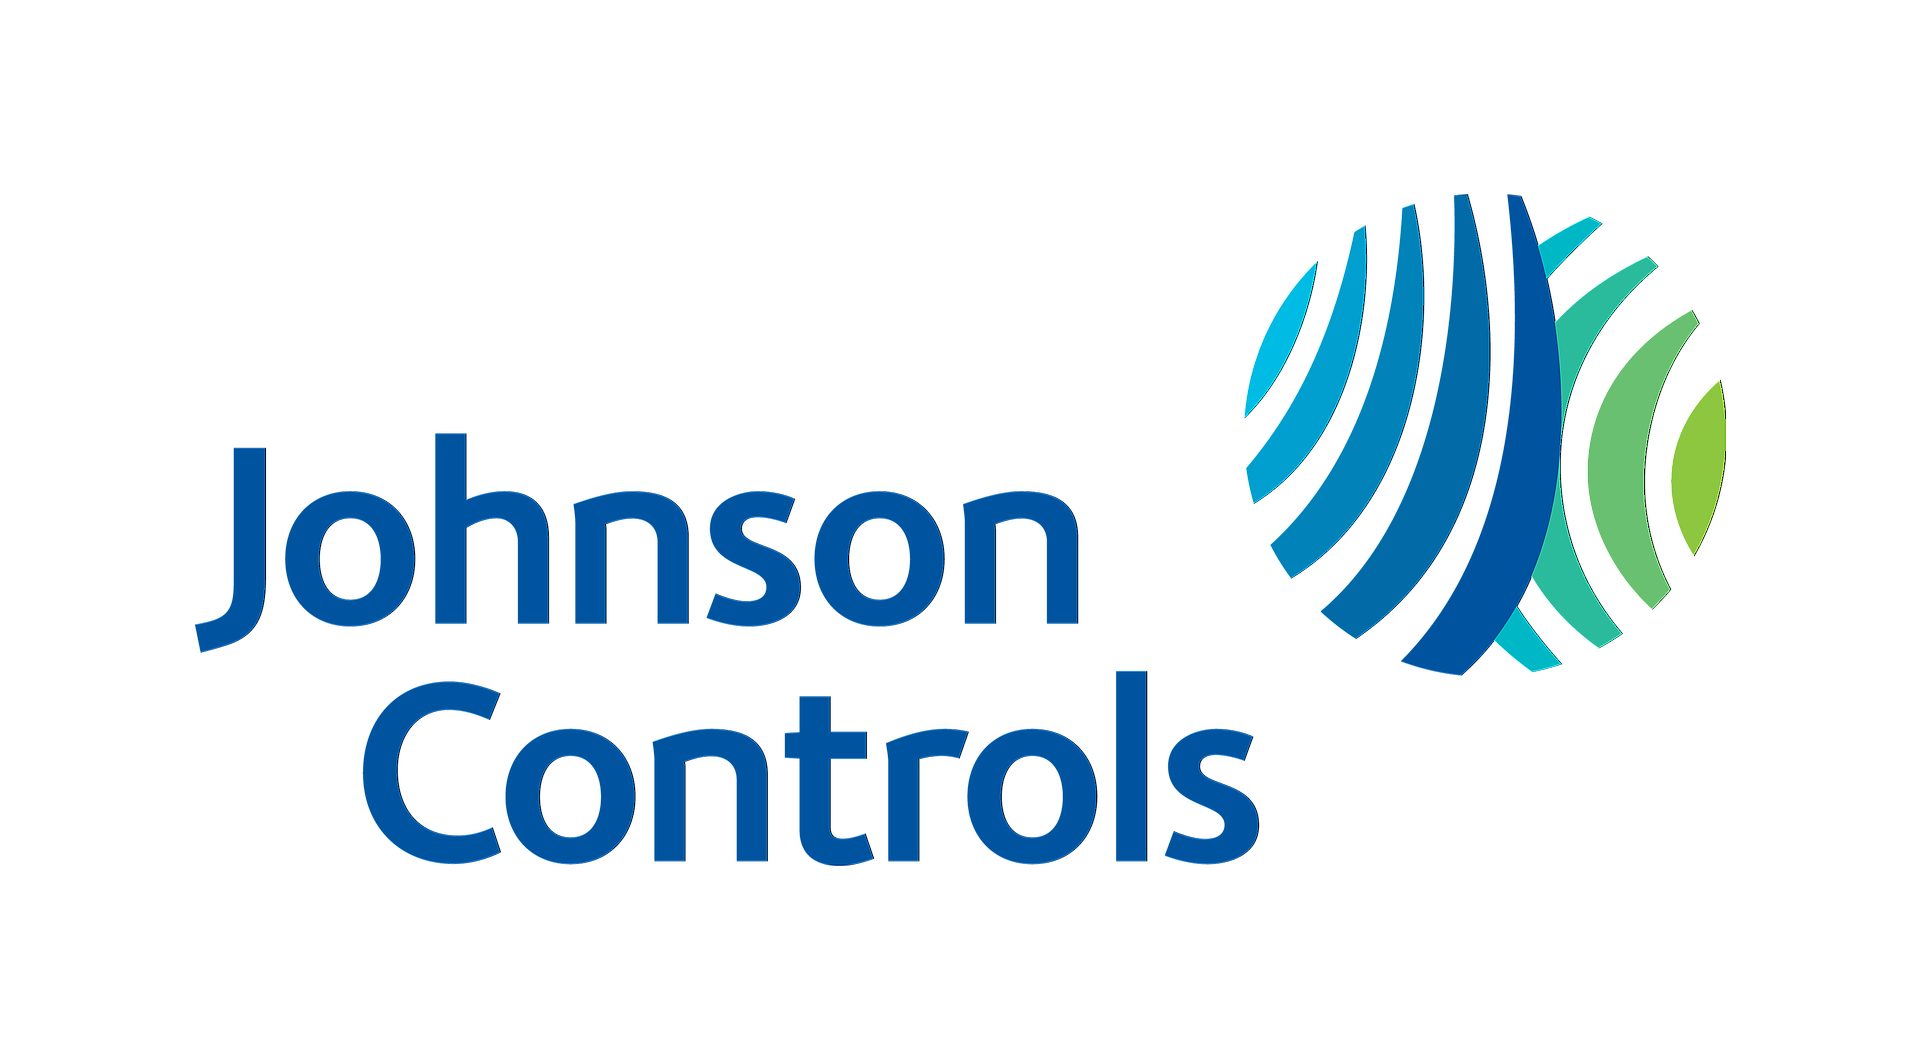 Conozca más sobre el ataque de ransomware de Johnson Controls, una crisis cibernética con una demanda de 51 millones de dólares, preocupaciones del DHS y repercusiones continuas